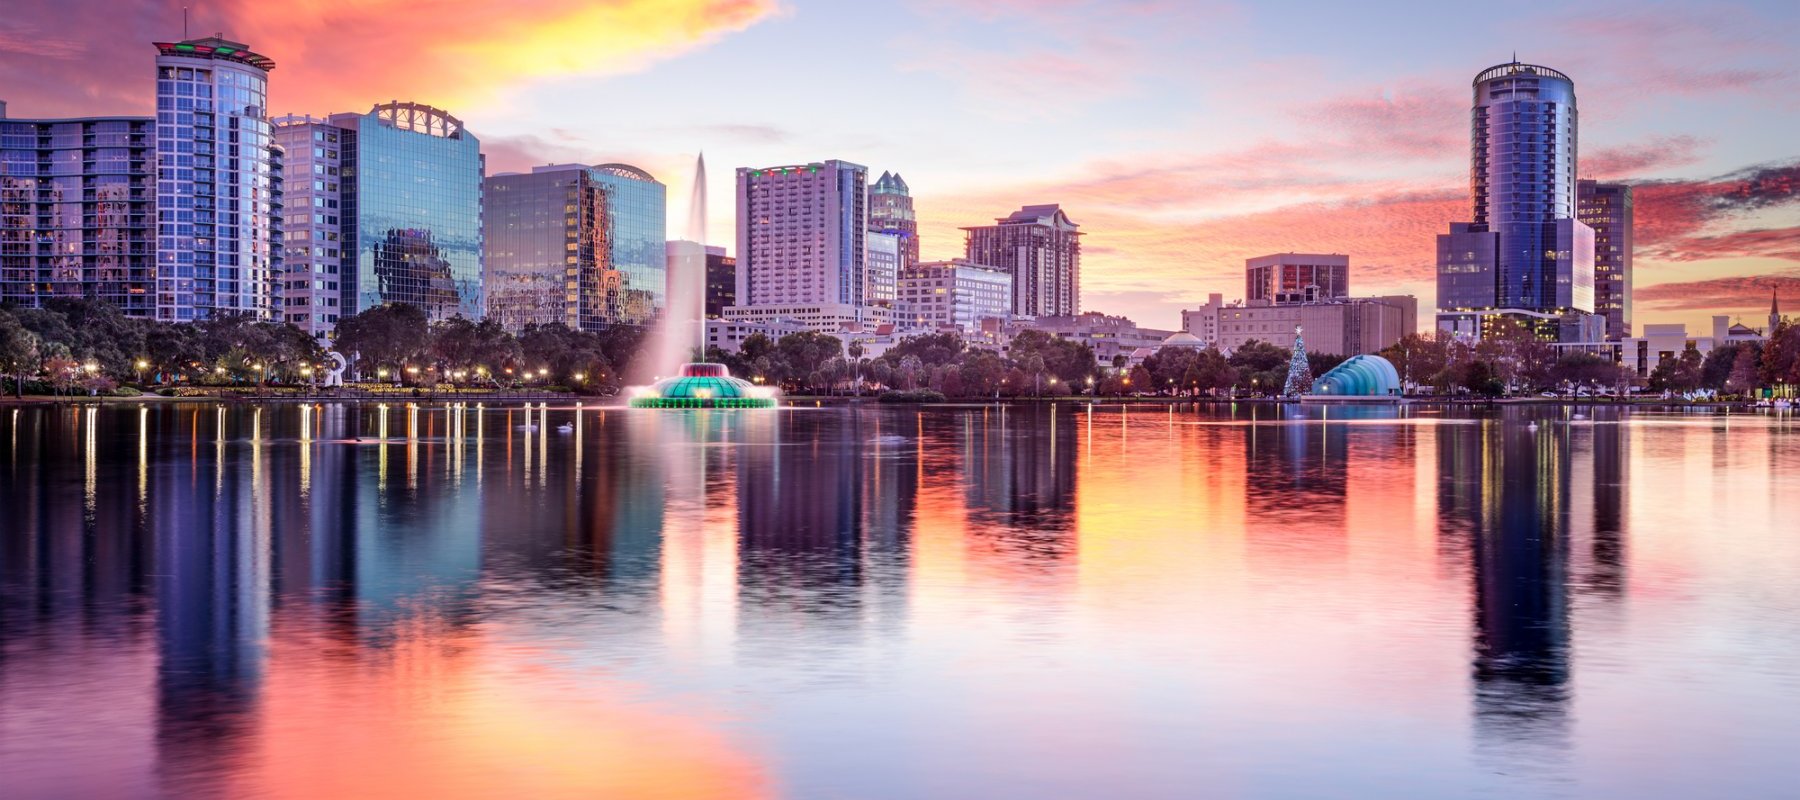 a view of Orlando skyline